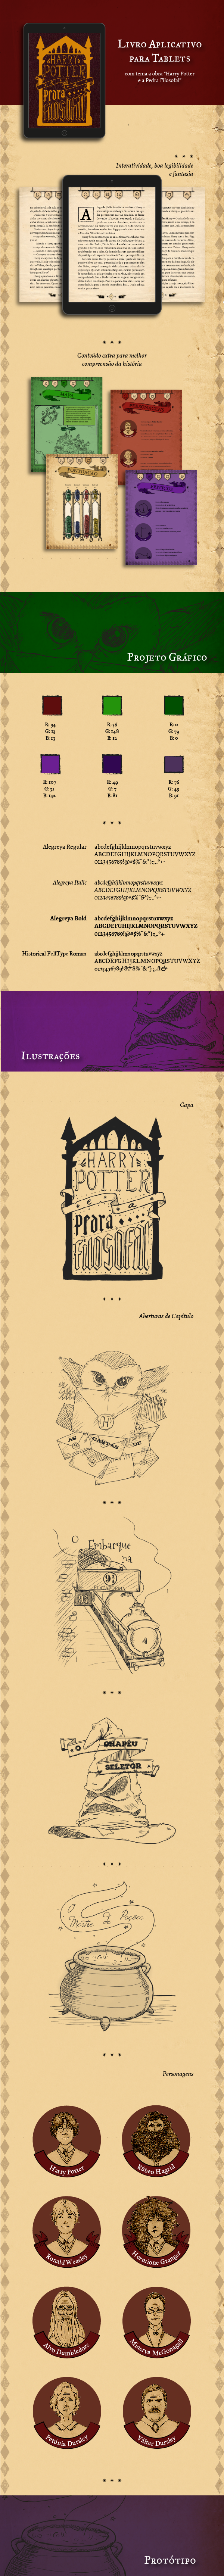 harry potter appbook vintage